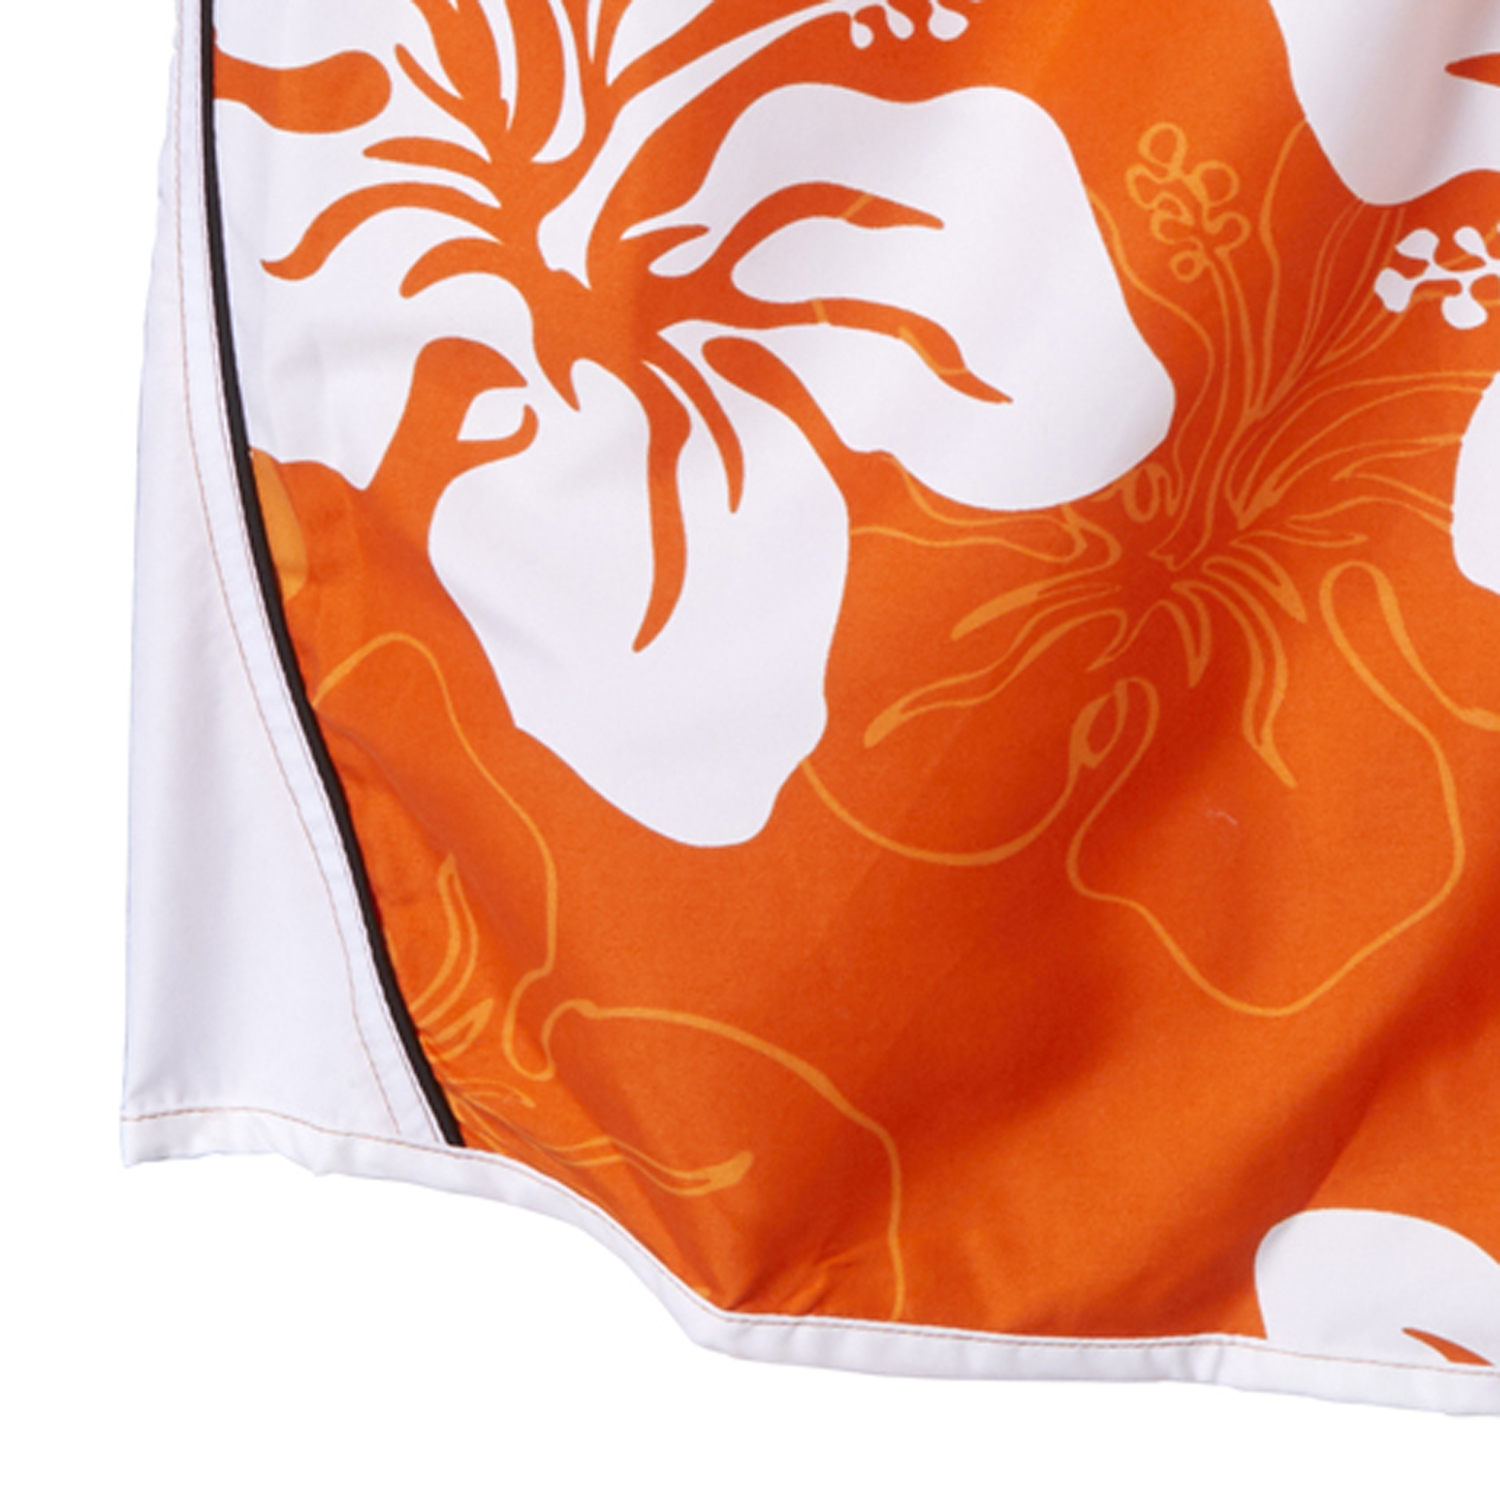 Badeshort von eleMar in orange-weiß für Herren Übergrößen 7XL bis 10XL geblümt